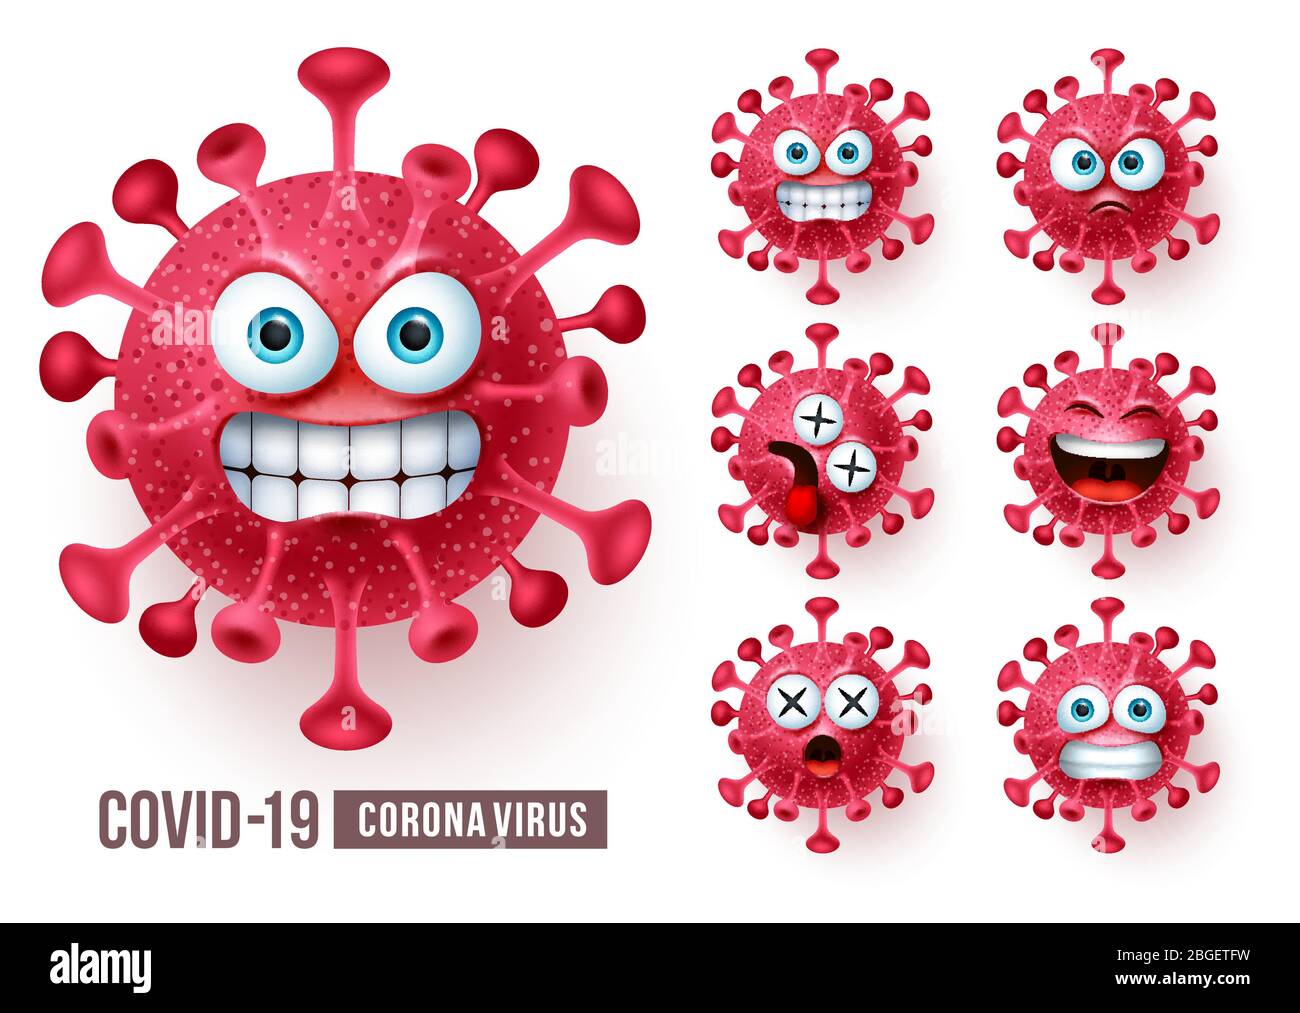 Vektorsatz für Corona-Virus-Emoticons. Covid19 Corona Virus Emoticons oder Emojis mit wütenden und gruseligen Gesichtsausdrücken in weißem Hintergrund. Stock Vektor